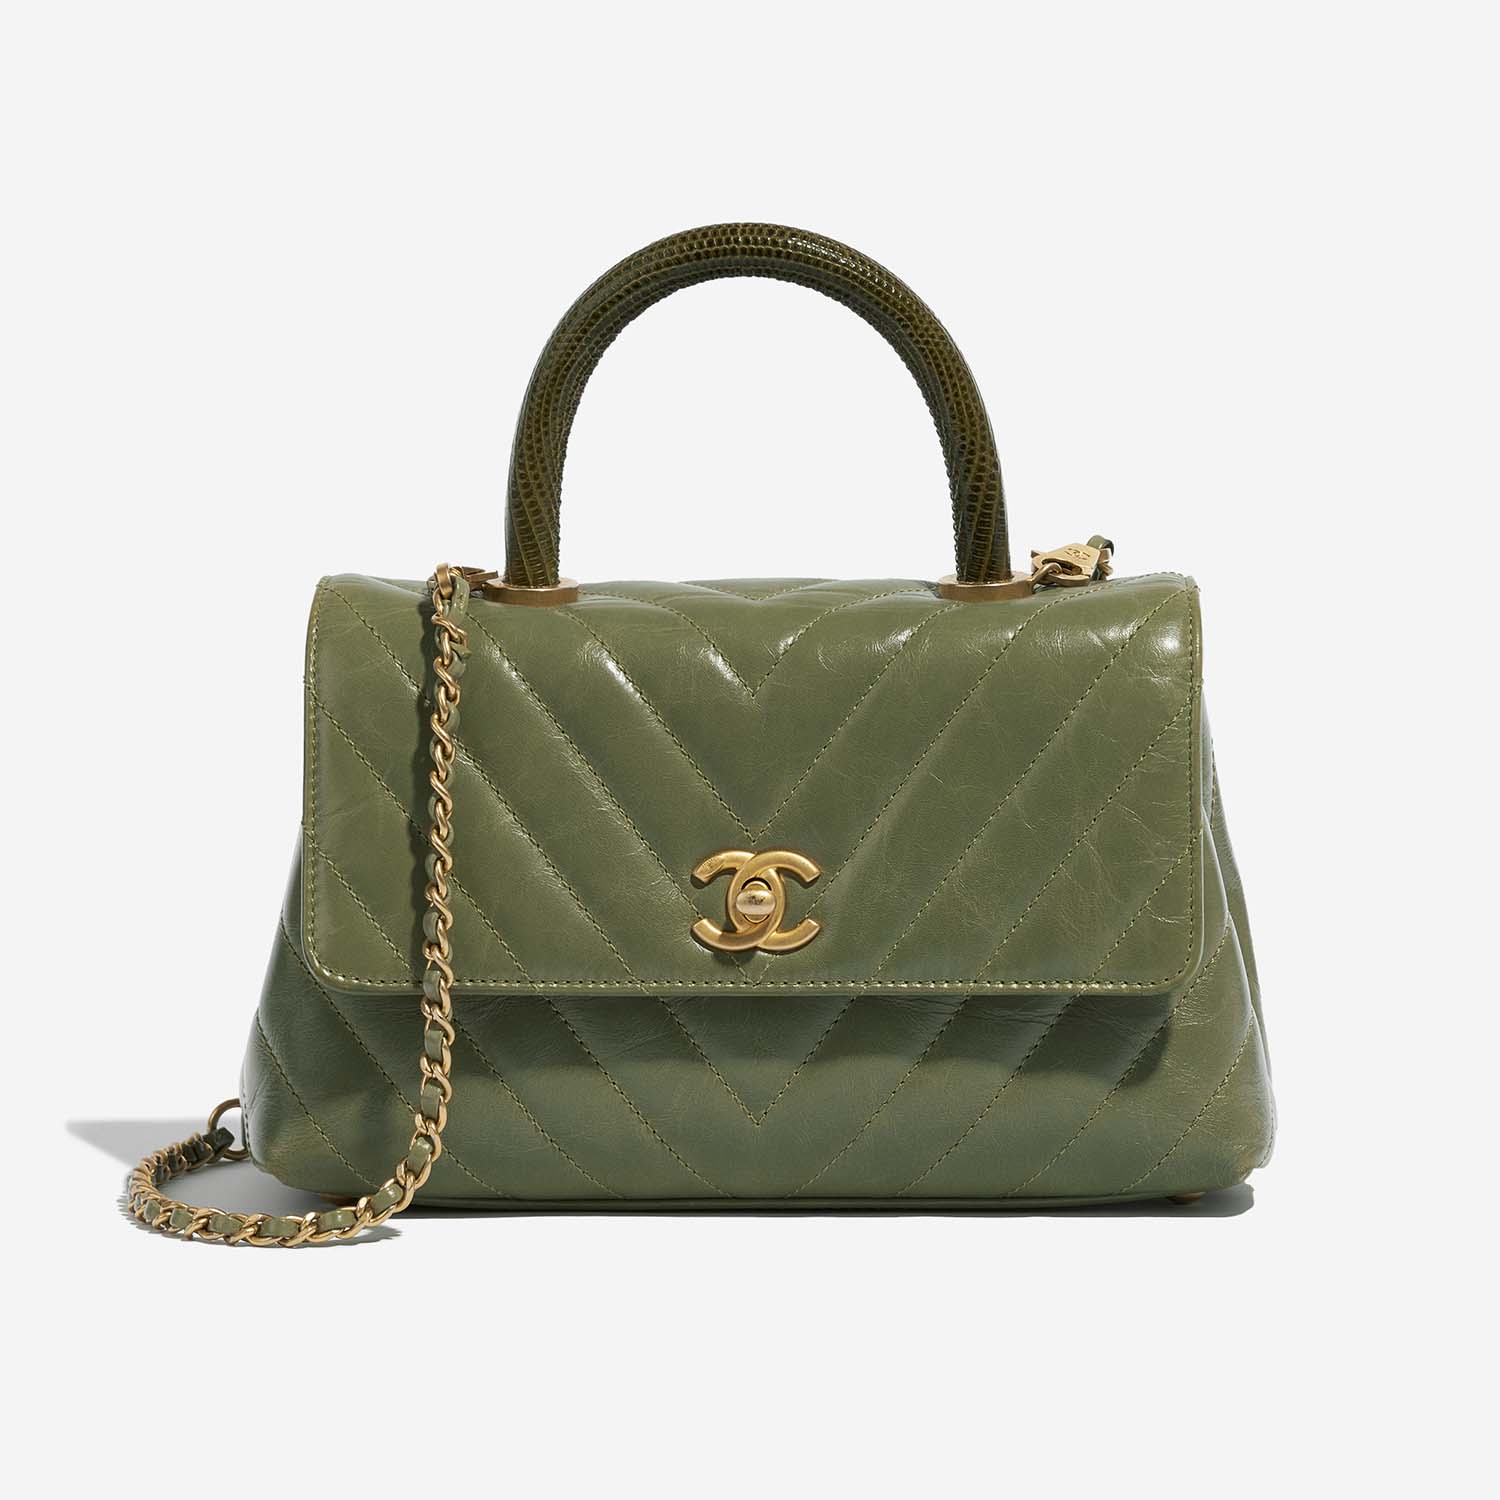 Chanel TimelessHandle Small Green Front | Verkaufen Sie Ihre Designer-Tasche auf Saclab.com